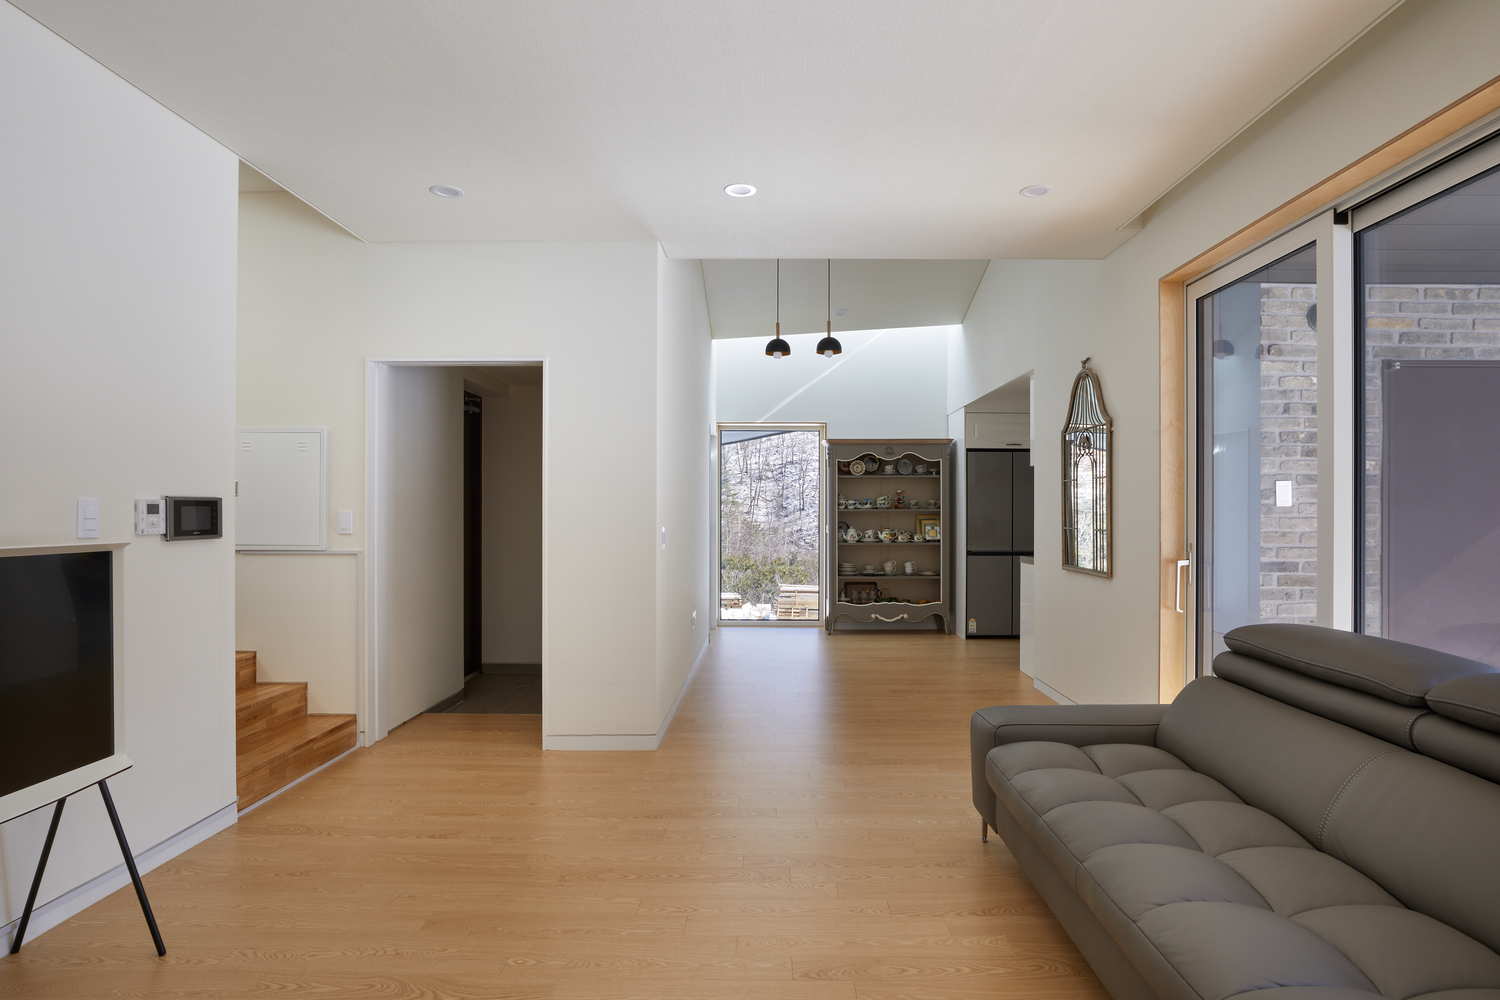 hình ảnh phòng khách nhà mái dốc với sàn lát gỗ, sofa màu ghi xám